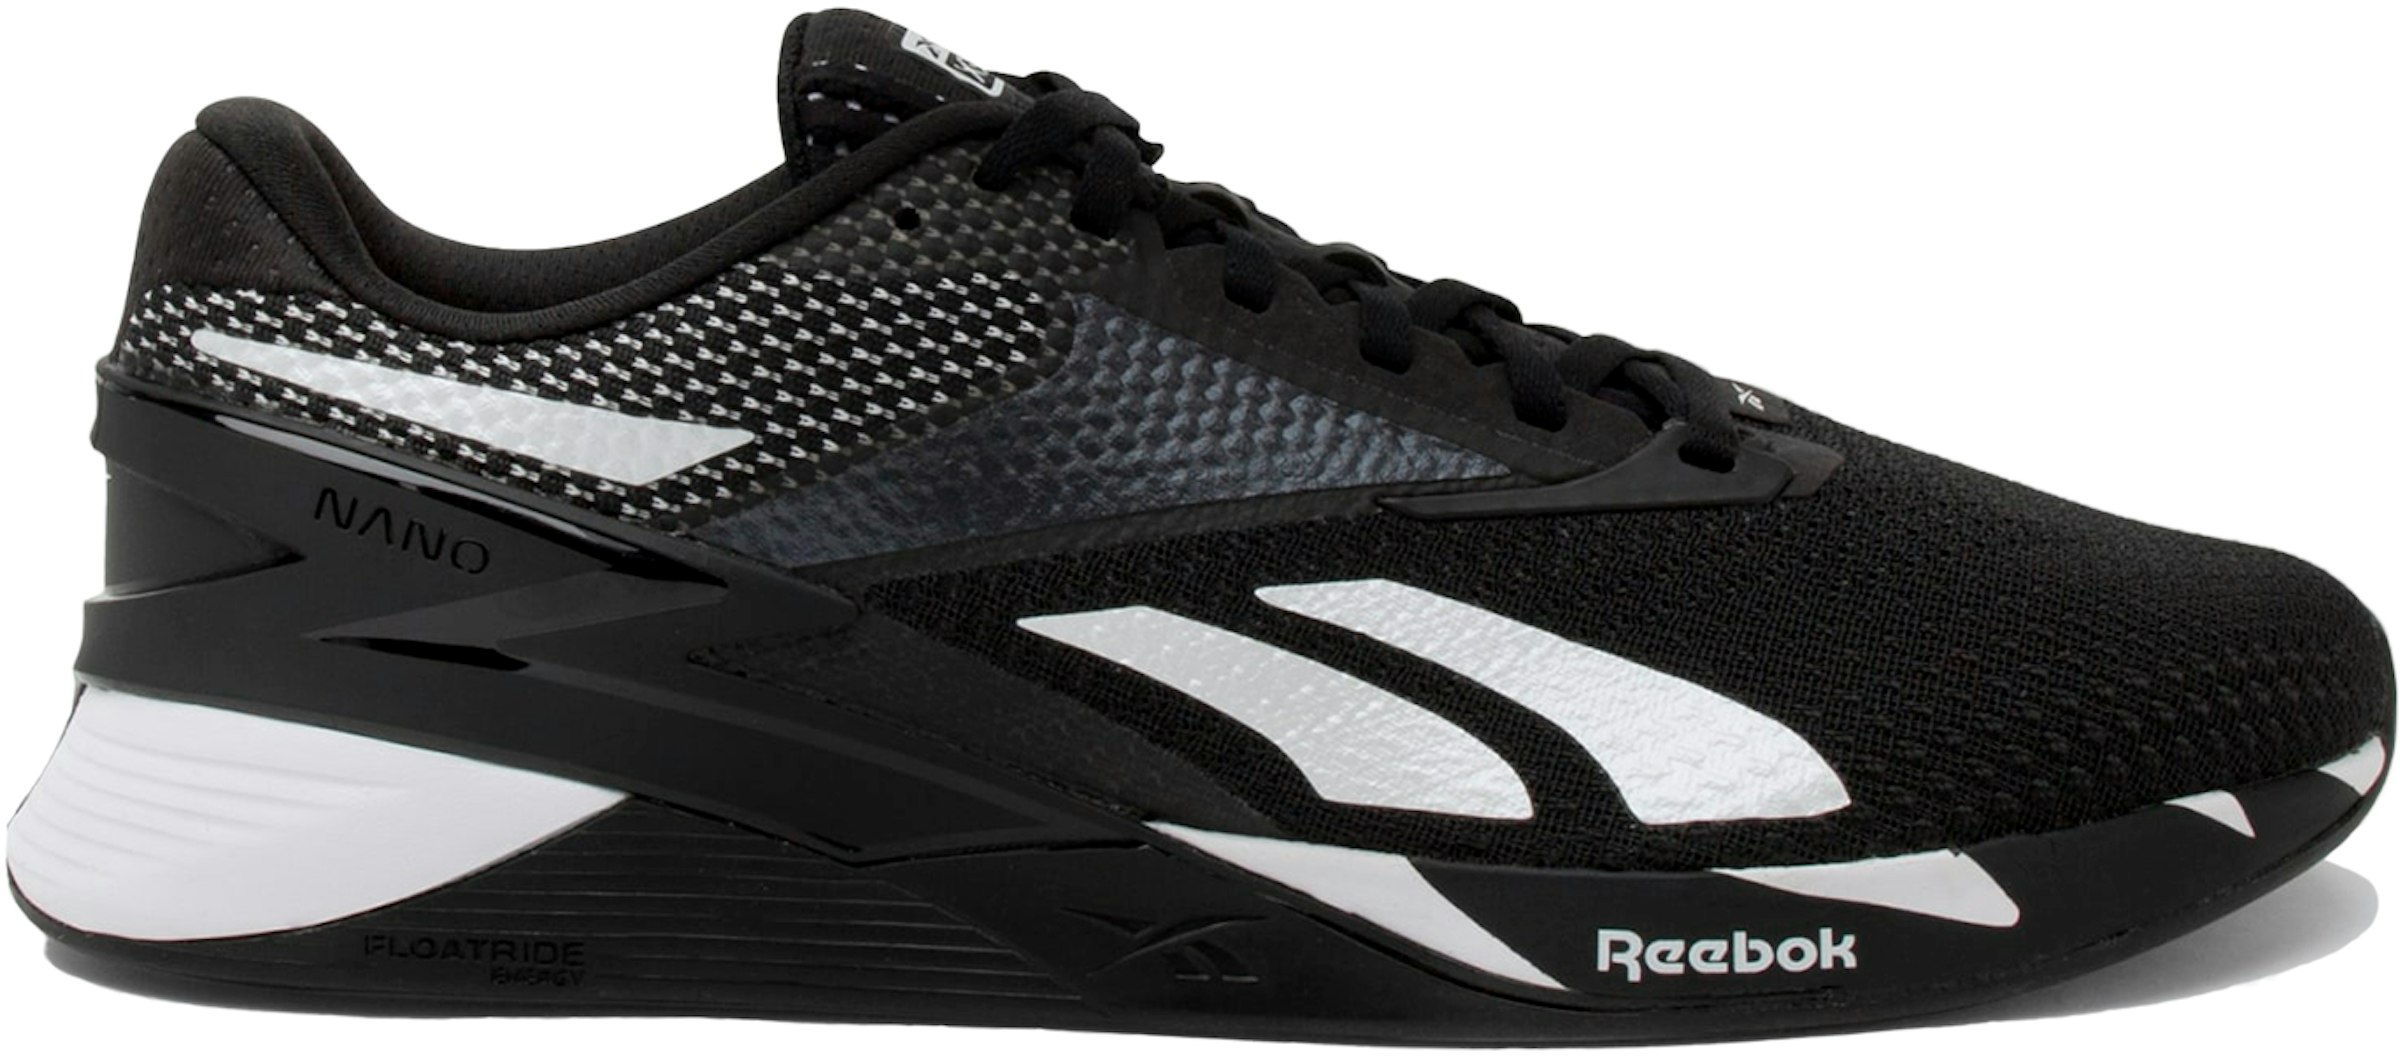 Reebok Nano Core Black Footwear Men's - HP6042 - US